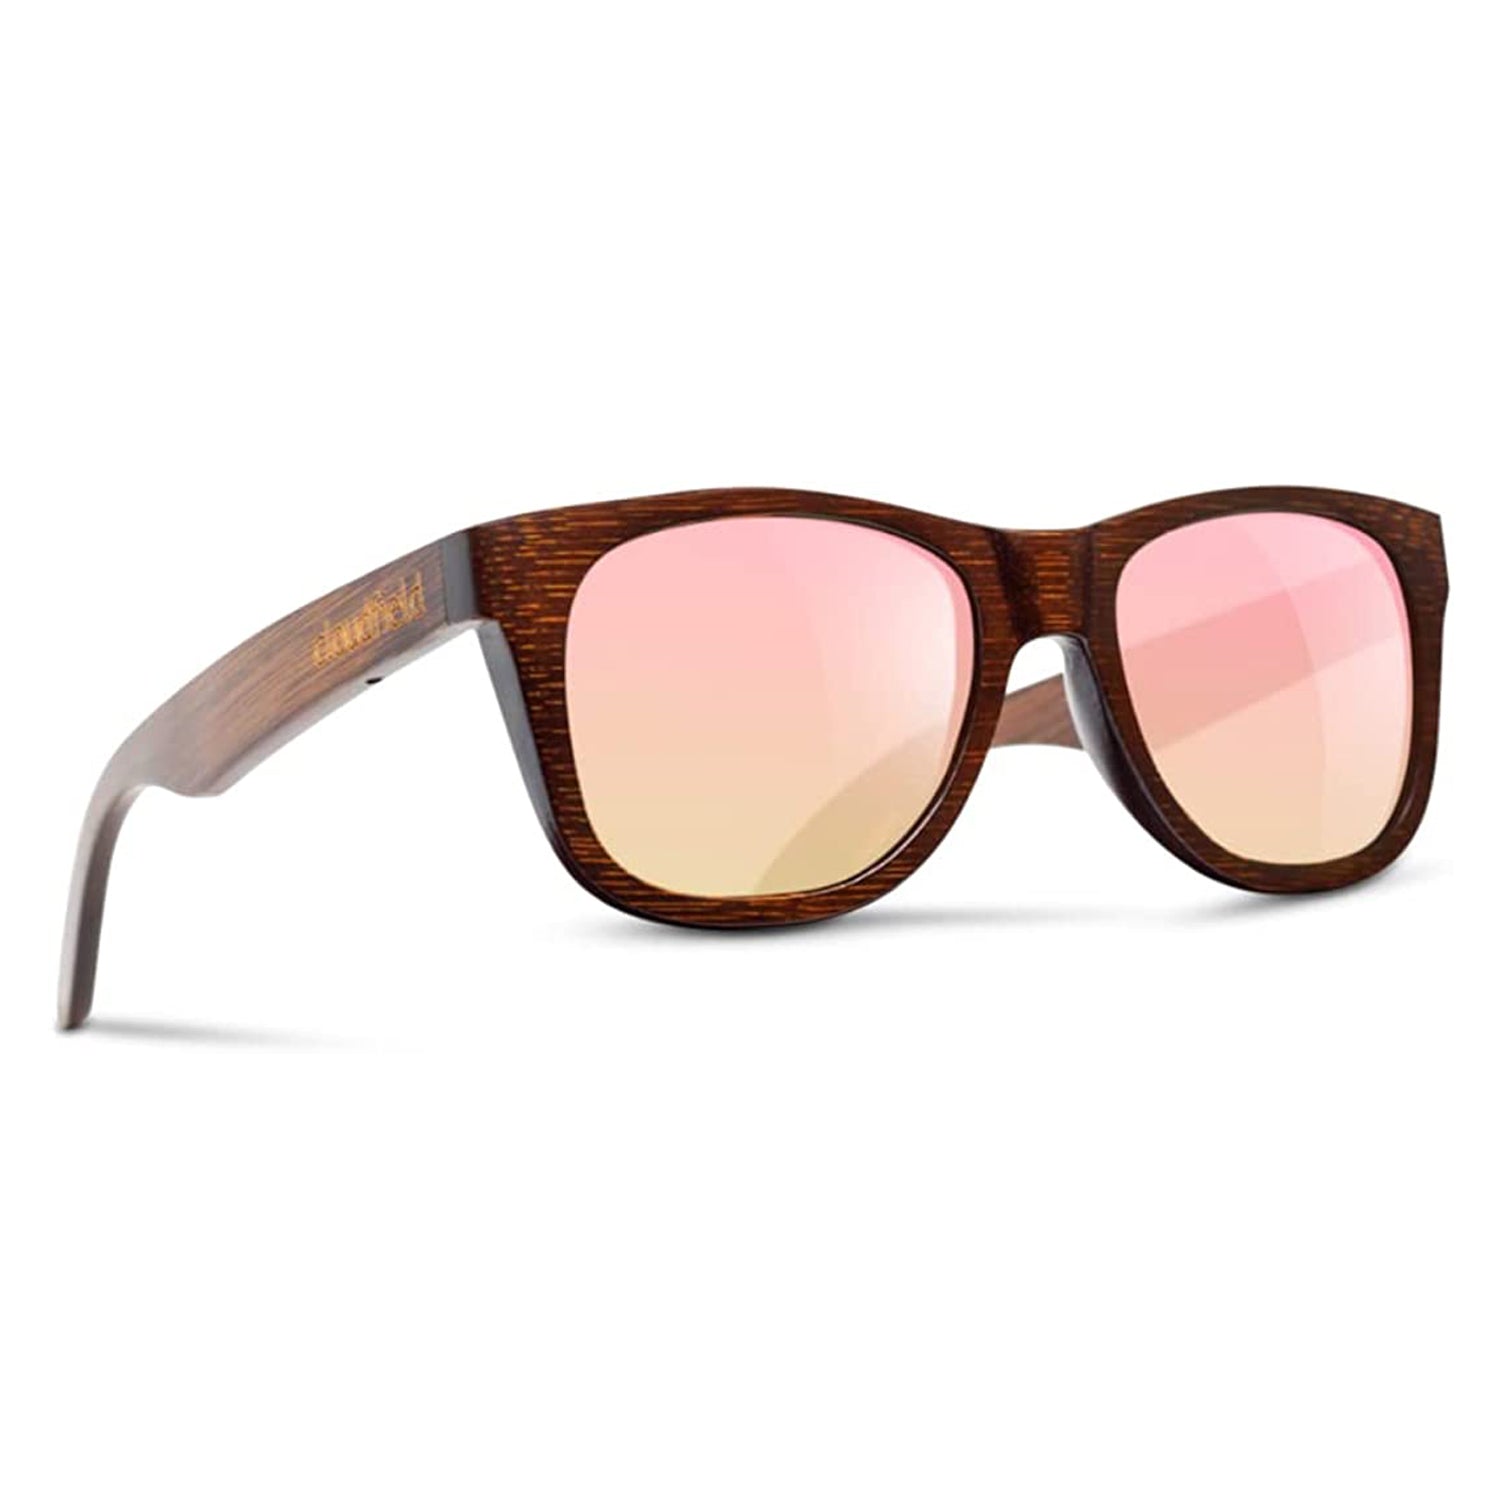 Rose gold unisex wood sunglasses polarized